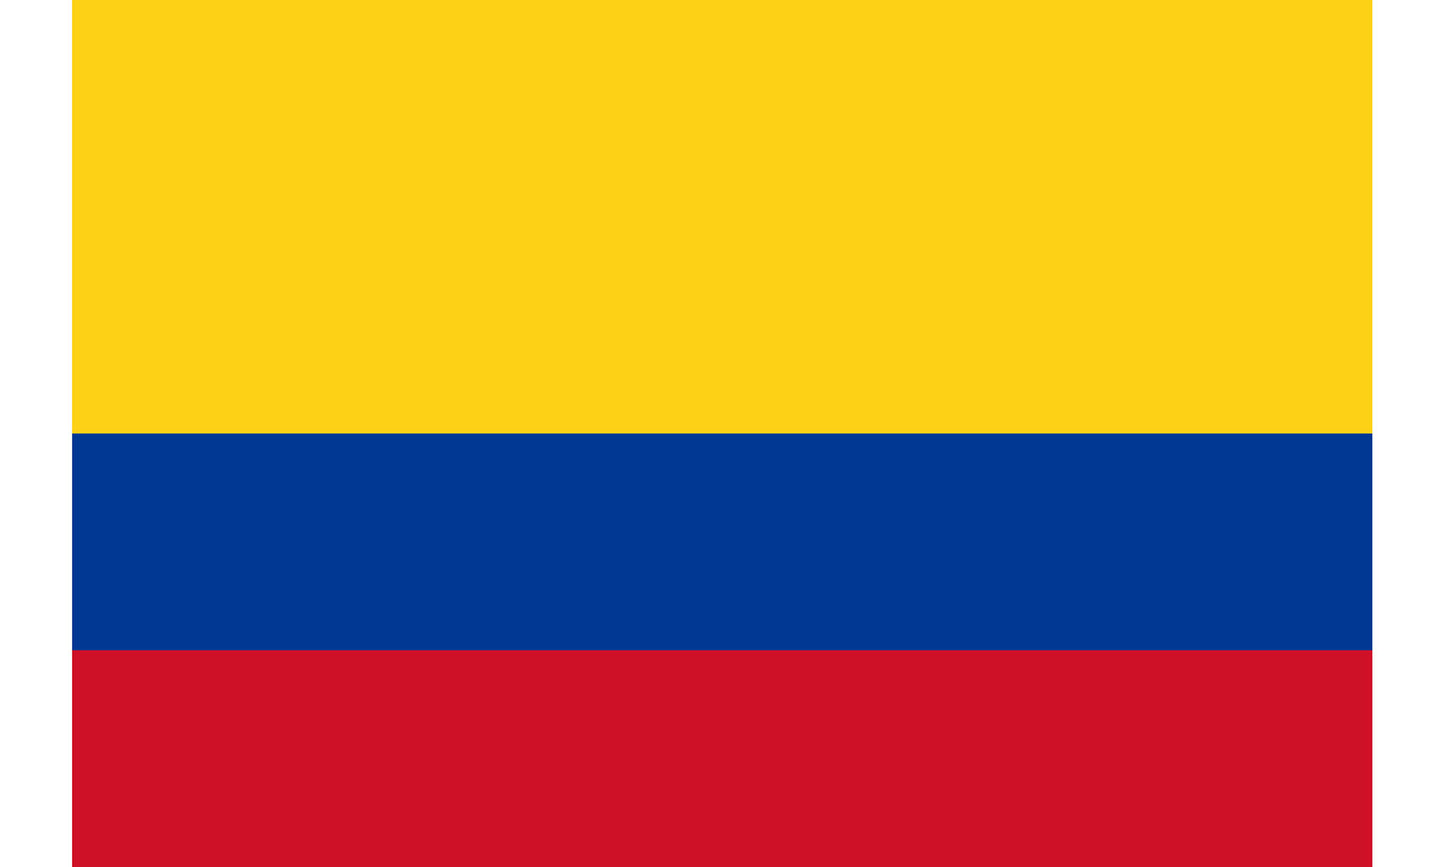 UF-COL-150x90 - флаг Колумбии. Материал флага: полиэстер с бронзовыми кольцами, размер: 90 см х 150 см